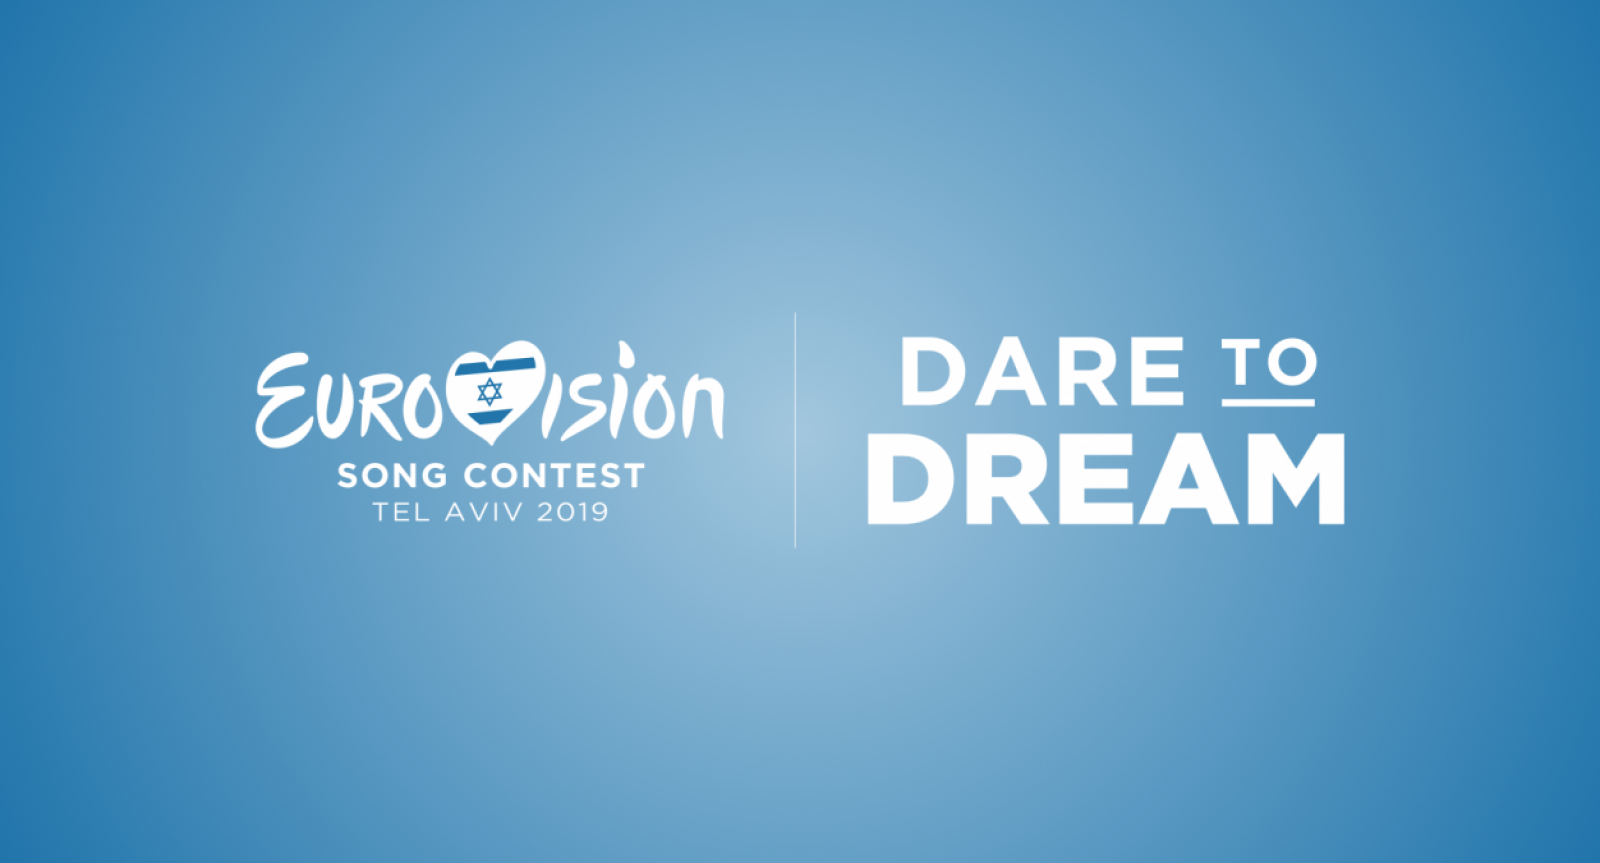 "Dare to dream", eslogan para la 64ª edición de Eurovisión en Tel Aviv.